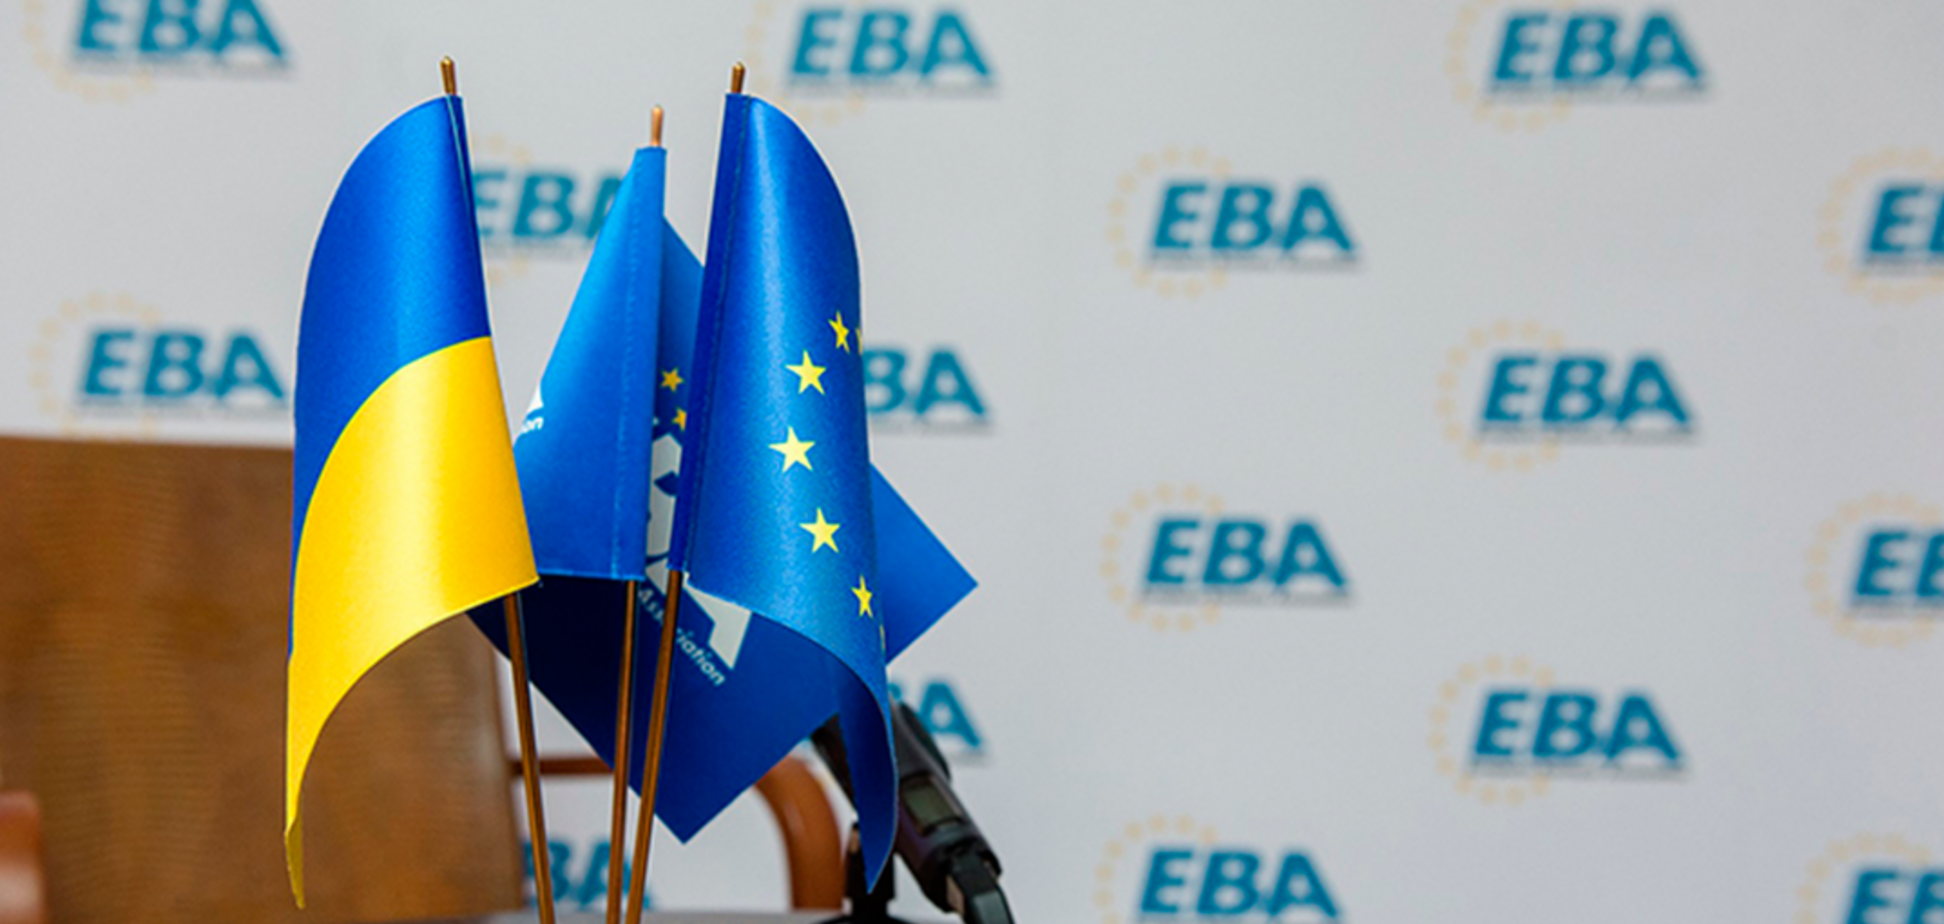 ЕВА поблагодарила правительство Украины за конструктивный диалог